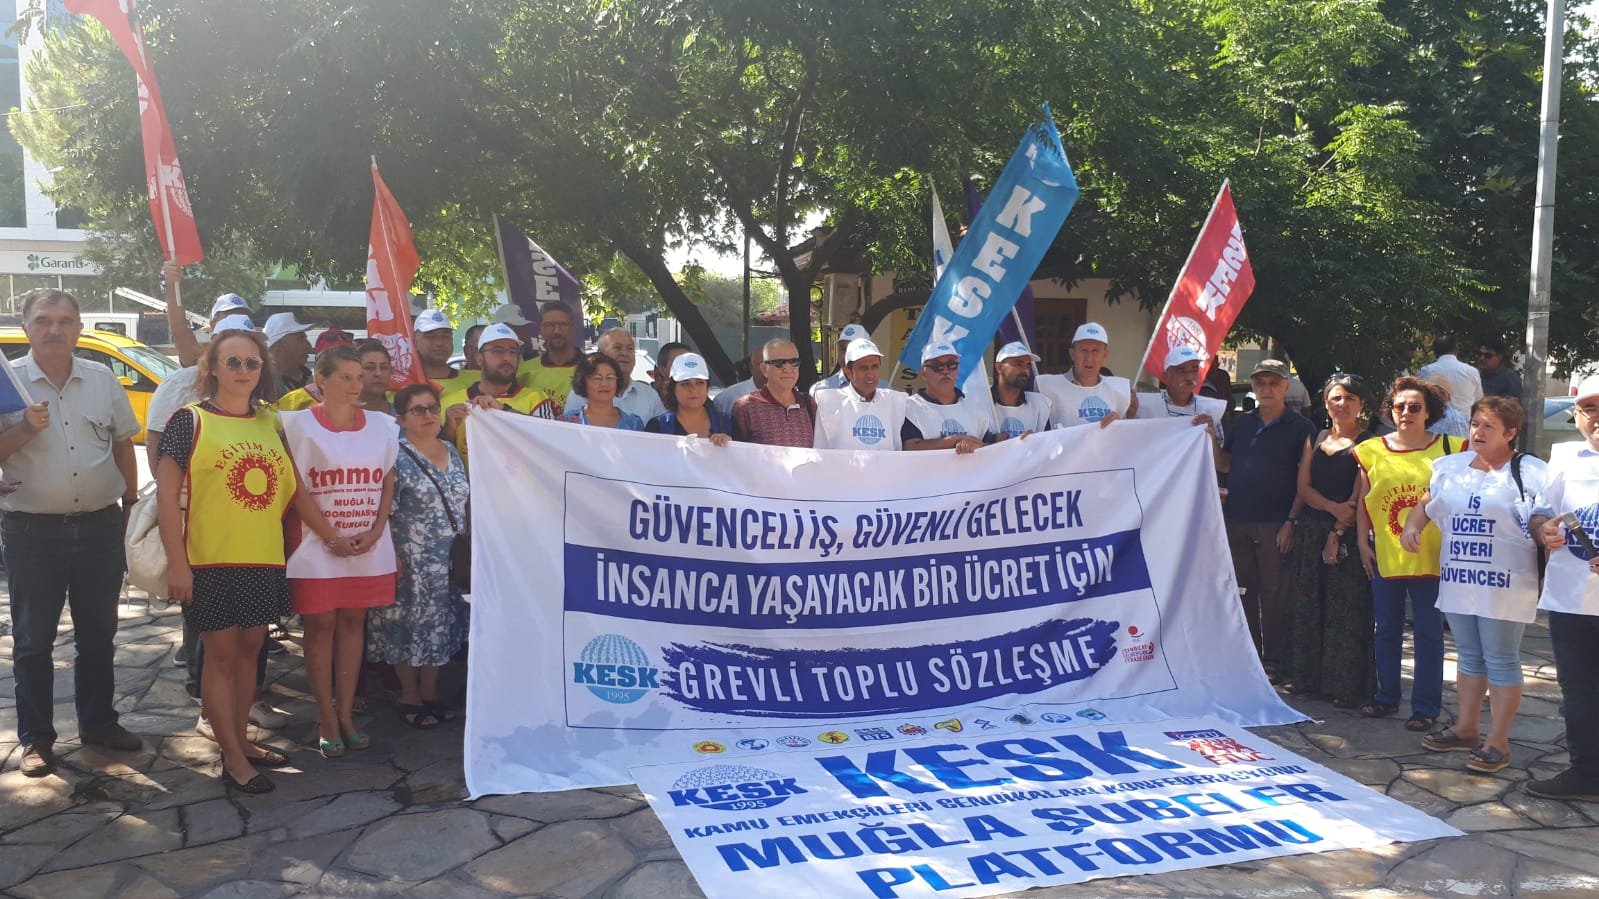 Toplu İş Sözleşmesi Taleplerimiz İçin 4 Koldan Ankara’ya Yürüyoruz!